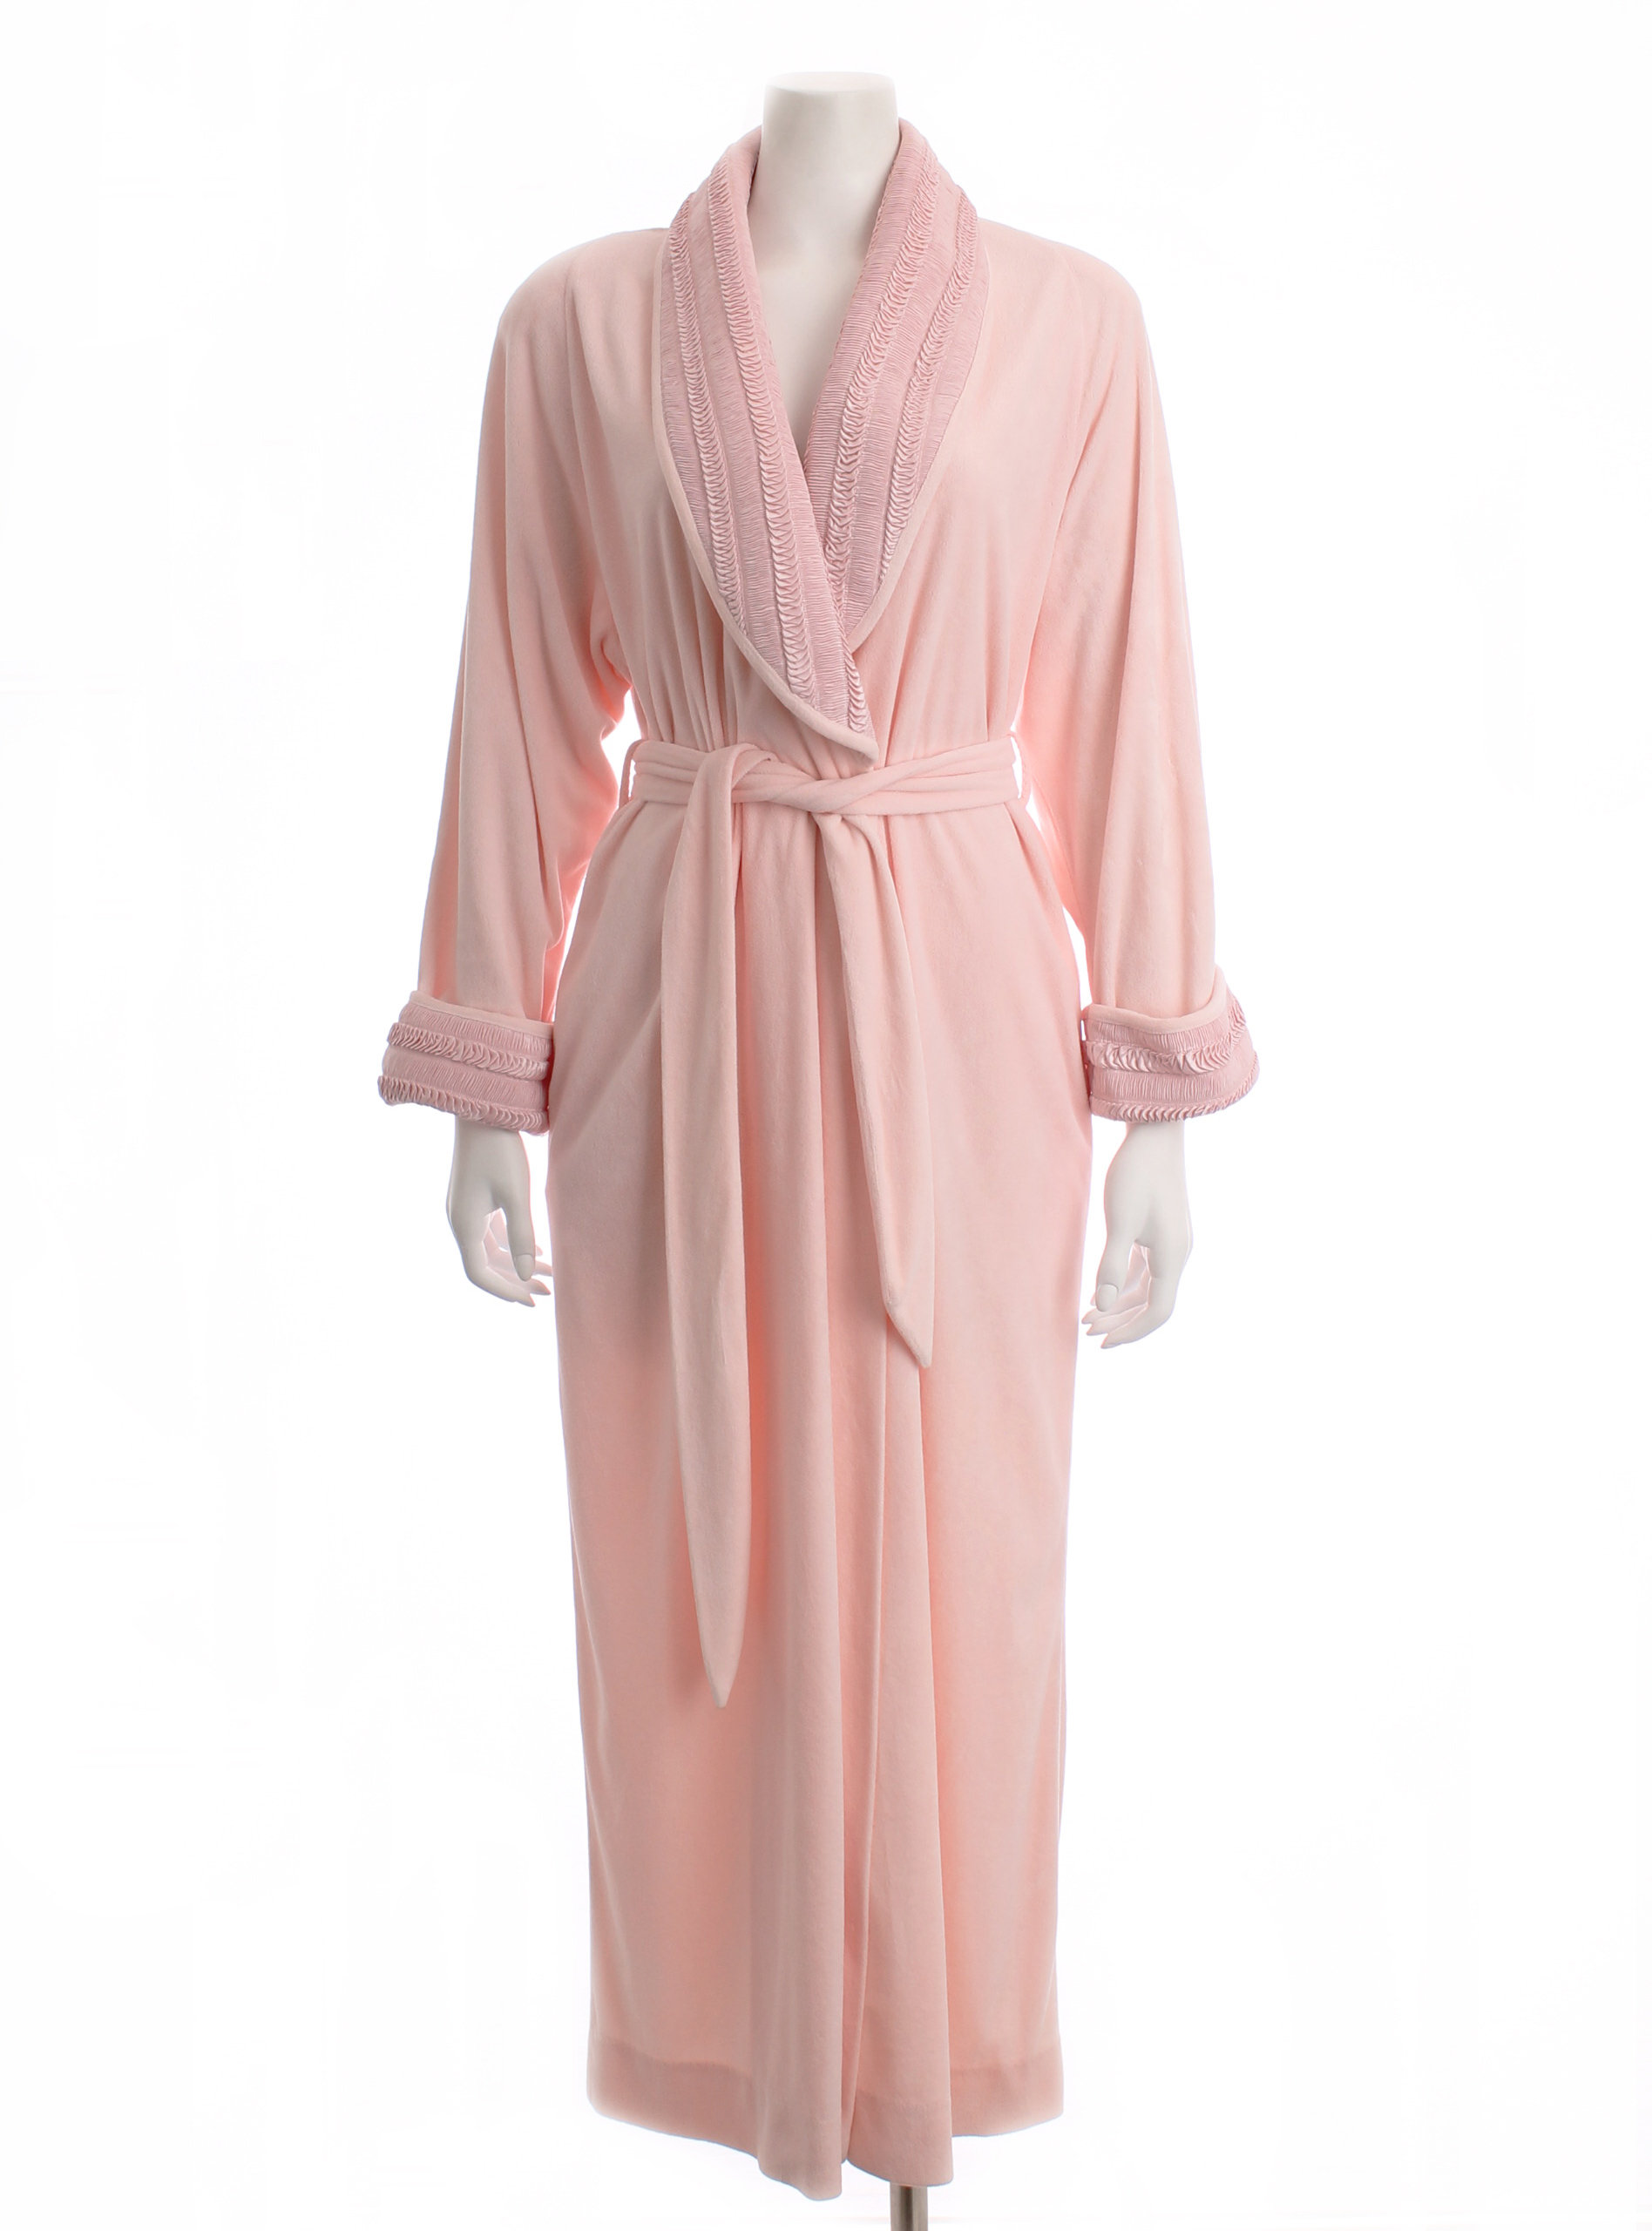 Nordstrom Velvety Pink Robe, Size M